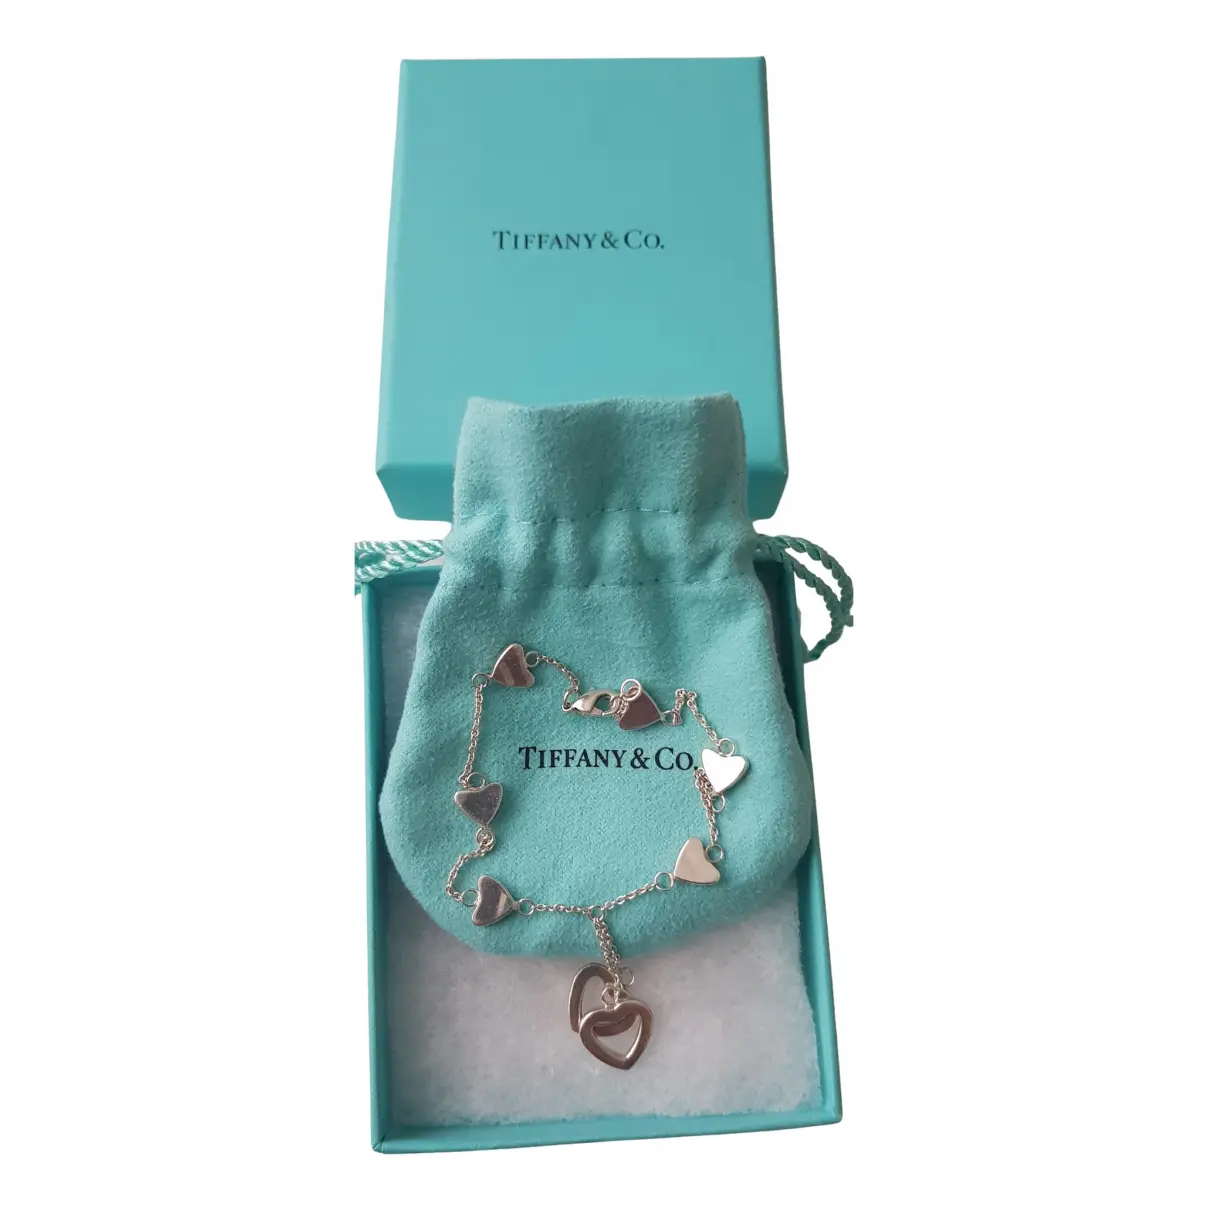 Buy Tiffany & Co Elsa Peretti silver bracelet online